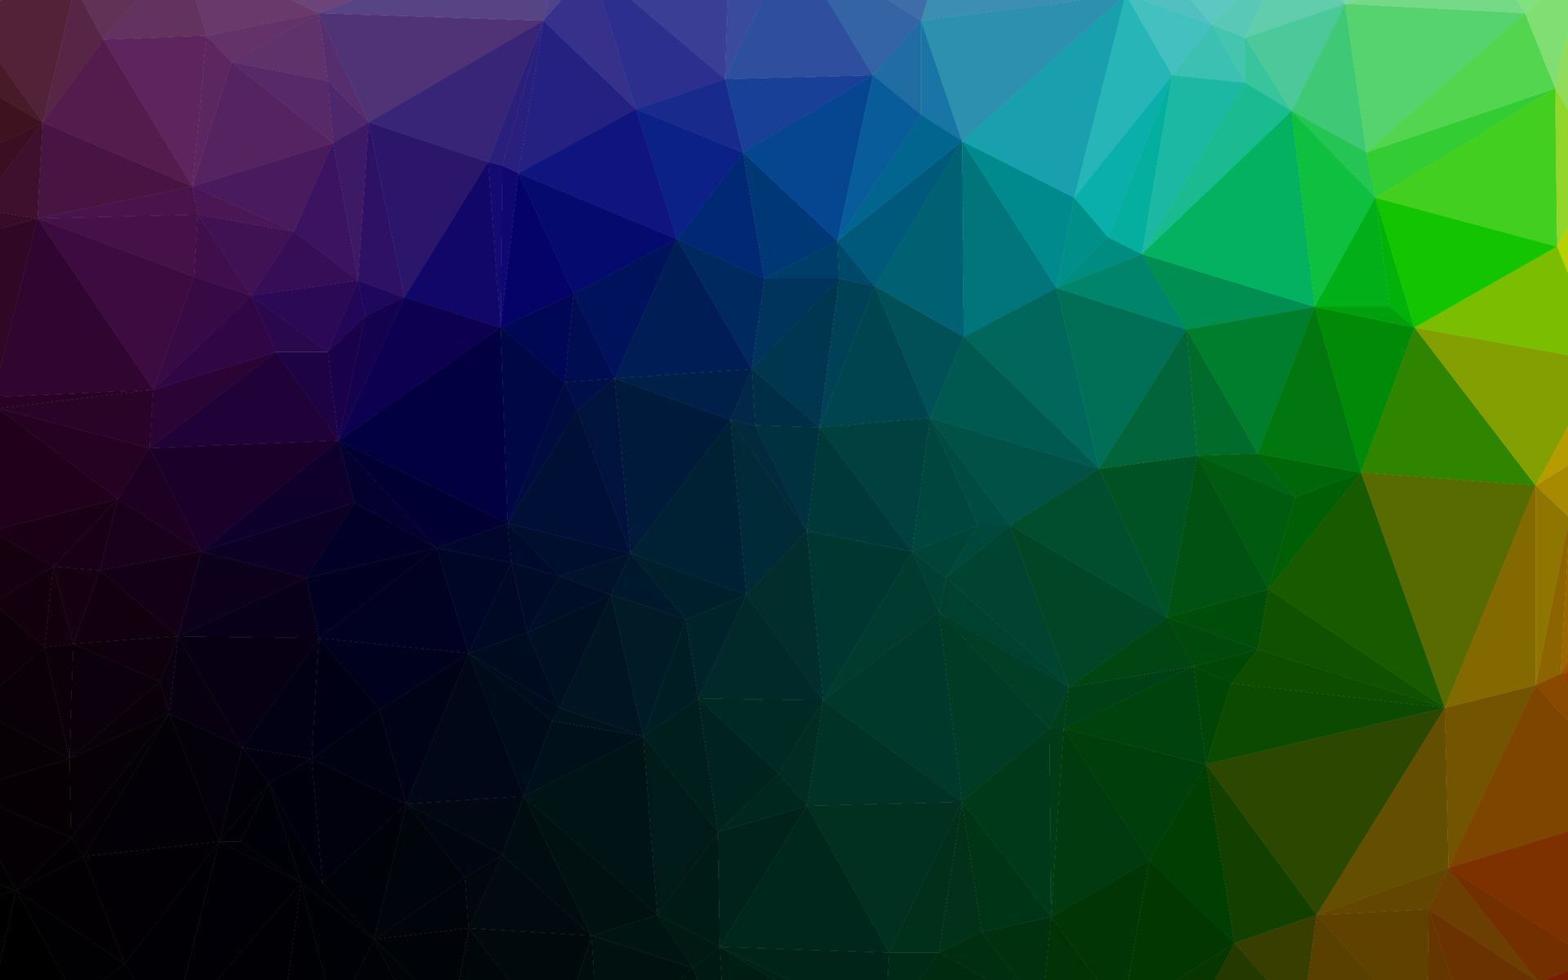 fundo abstrato do polígono do vetor do arco-íris multicolor, escuro.